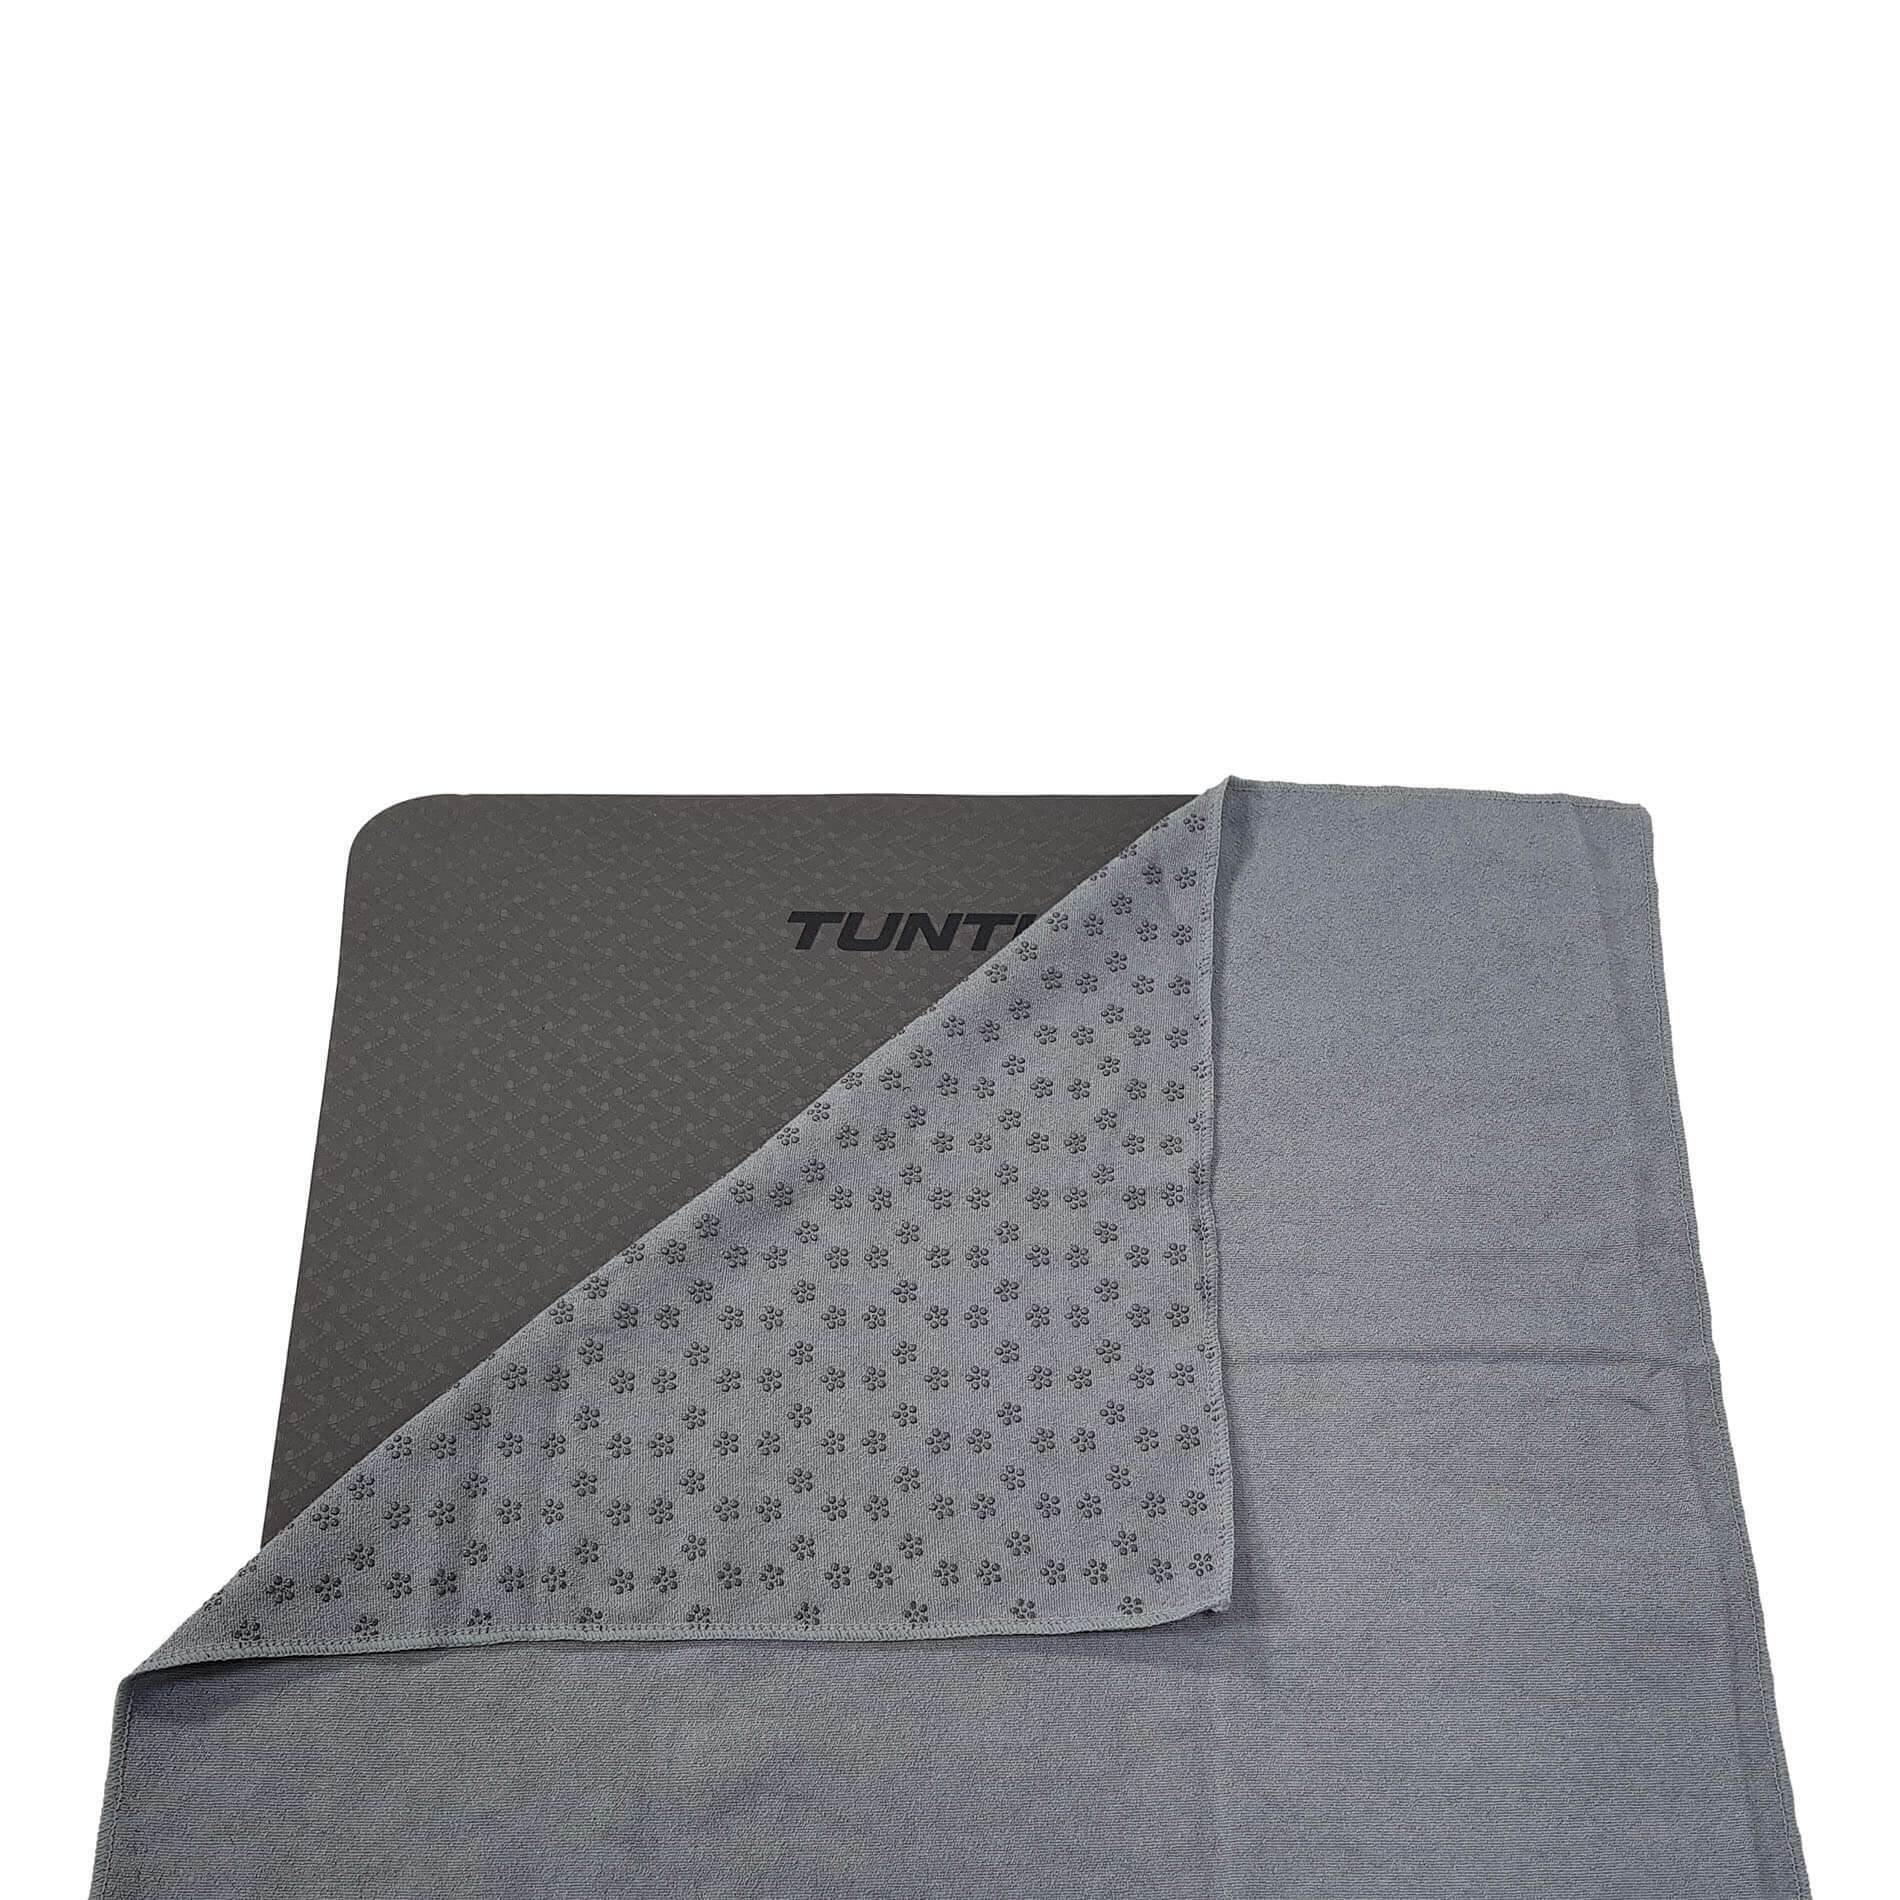 Silicone Yoga handdoek met anti slip - met draagtas